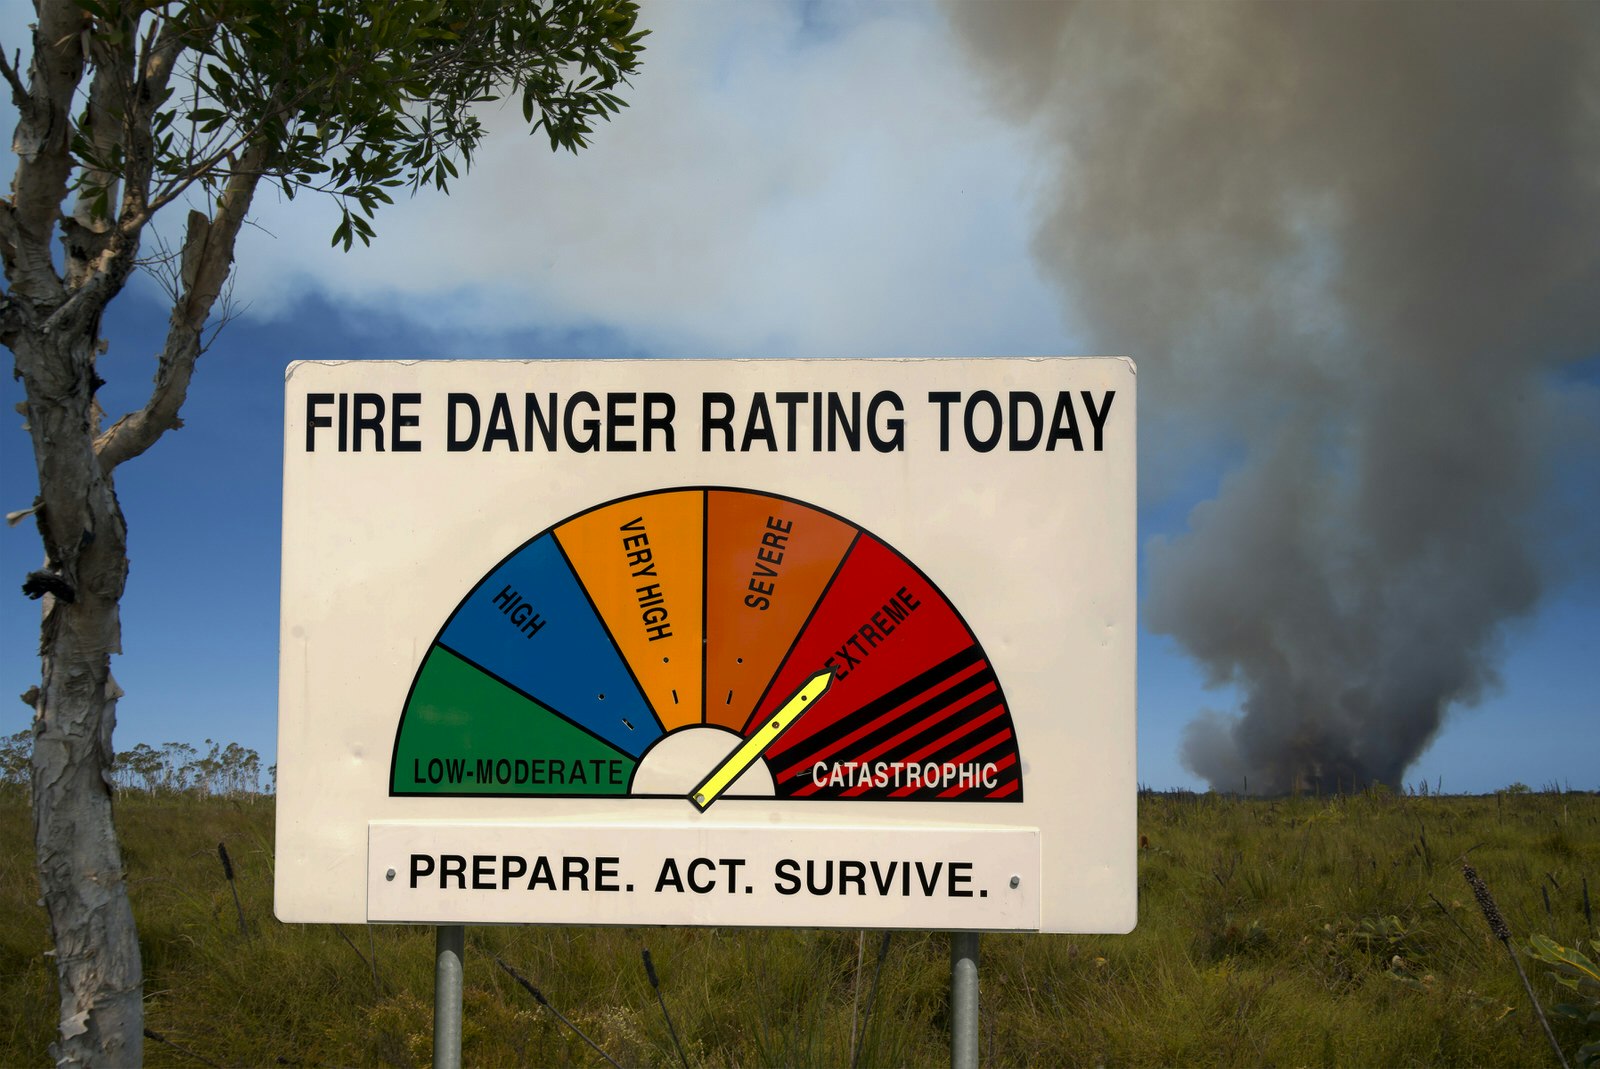 A large roadside sign showing the spectrum of danger ratings for bushfires